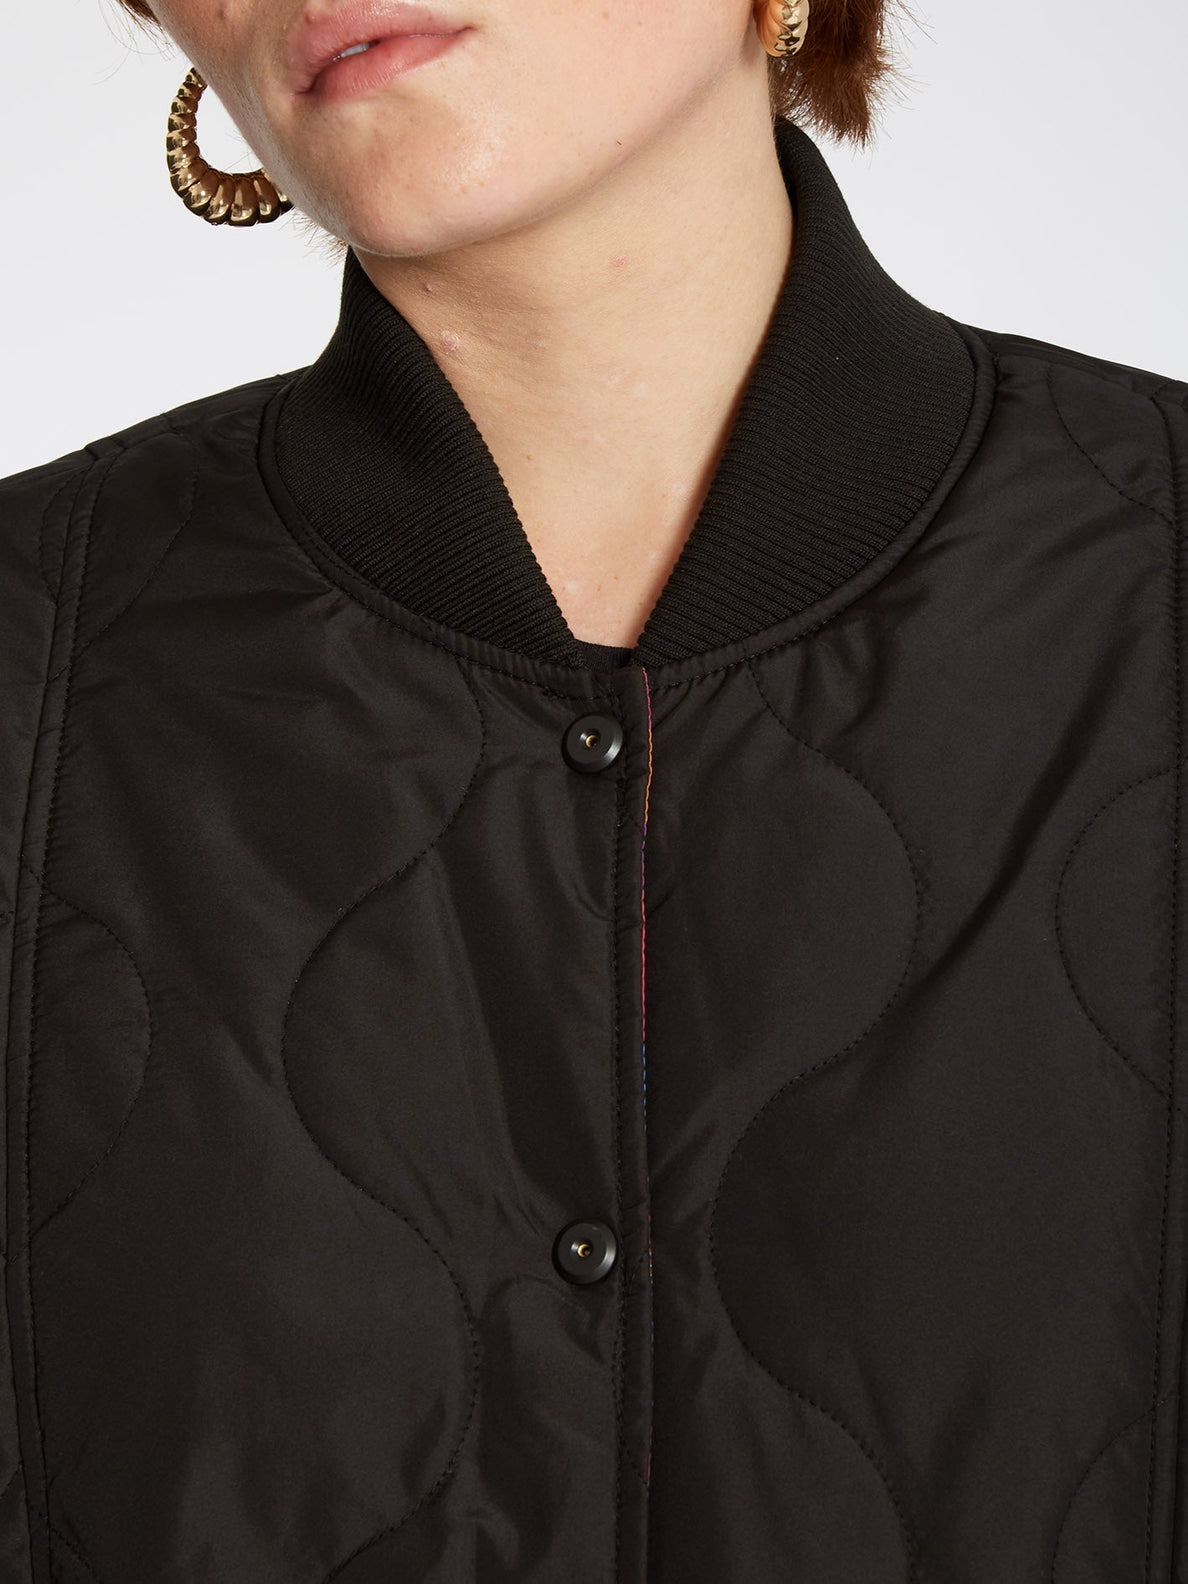 Chrissie Abbott X French Jacket (Reversible) - BLACK (B1732204_BLK) [3]